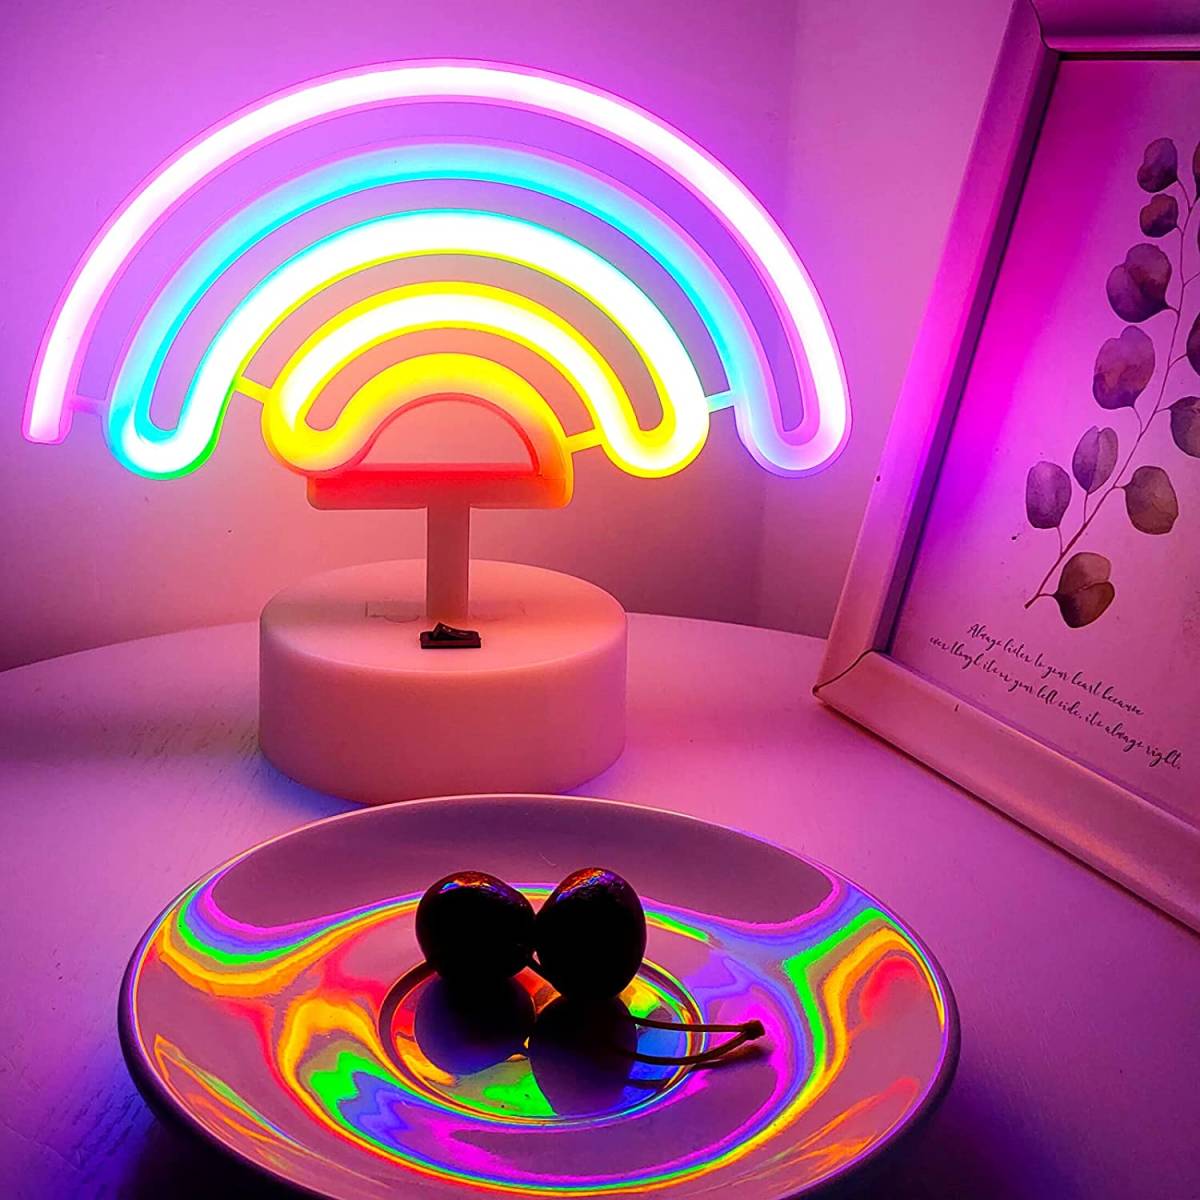 ネオンサイン レインボーライト 5色の虹 子供部屋に最適 電池&USB給電 ルームデコレーション ナイトライト 雰囲気作り 贈り物 室内飾り_画像2